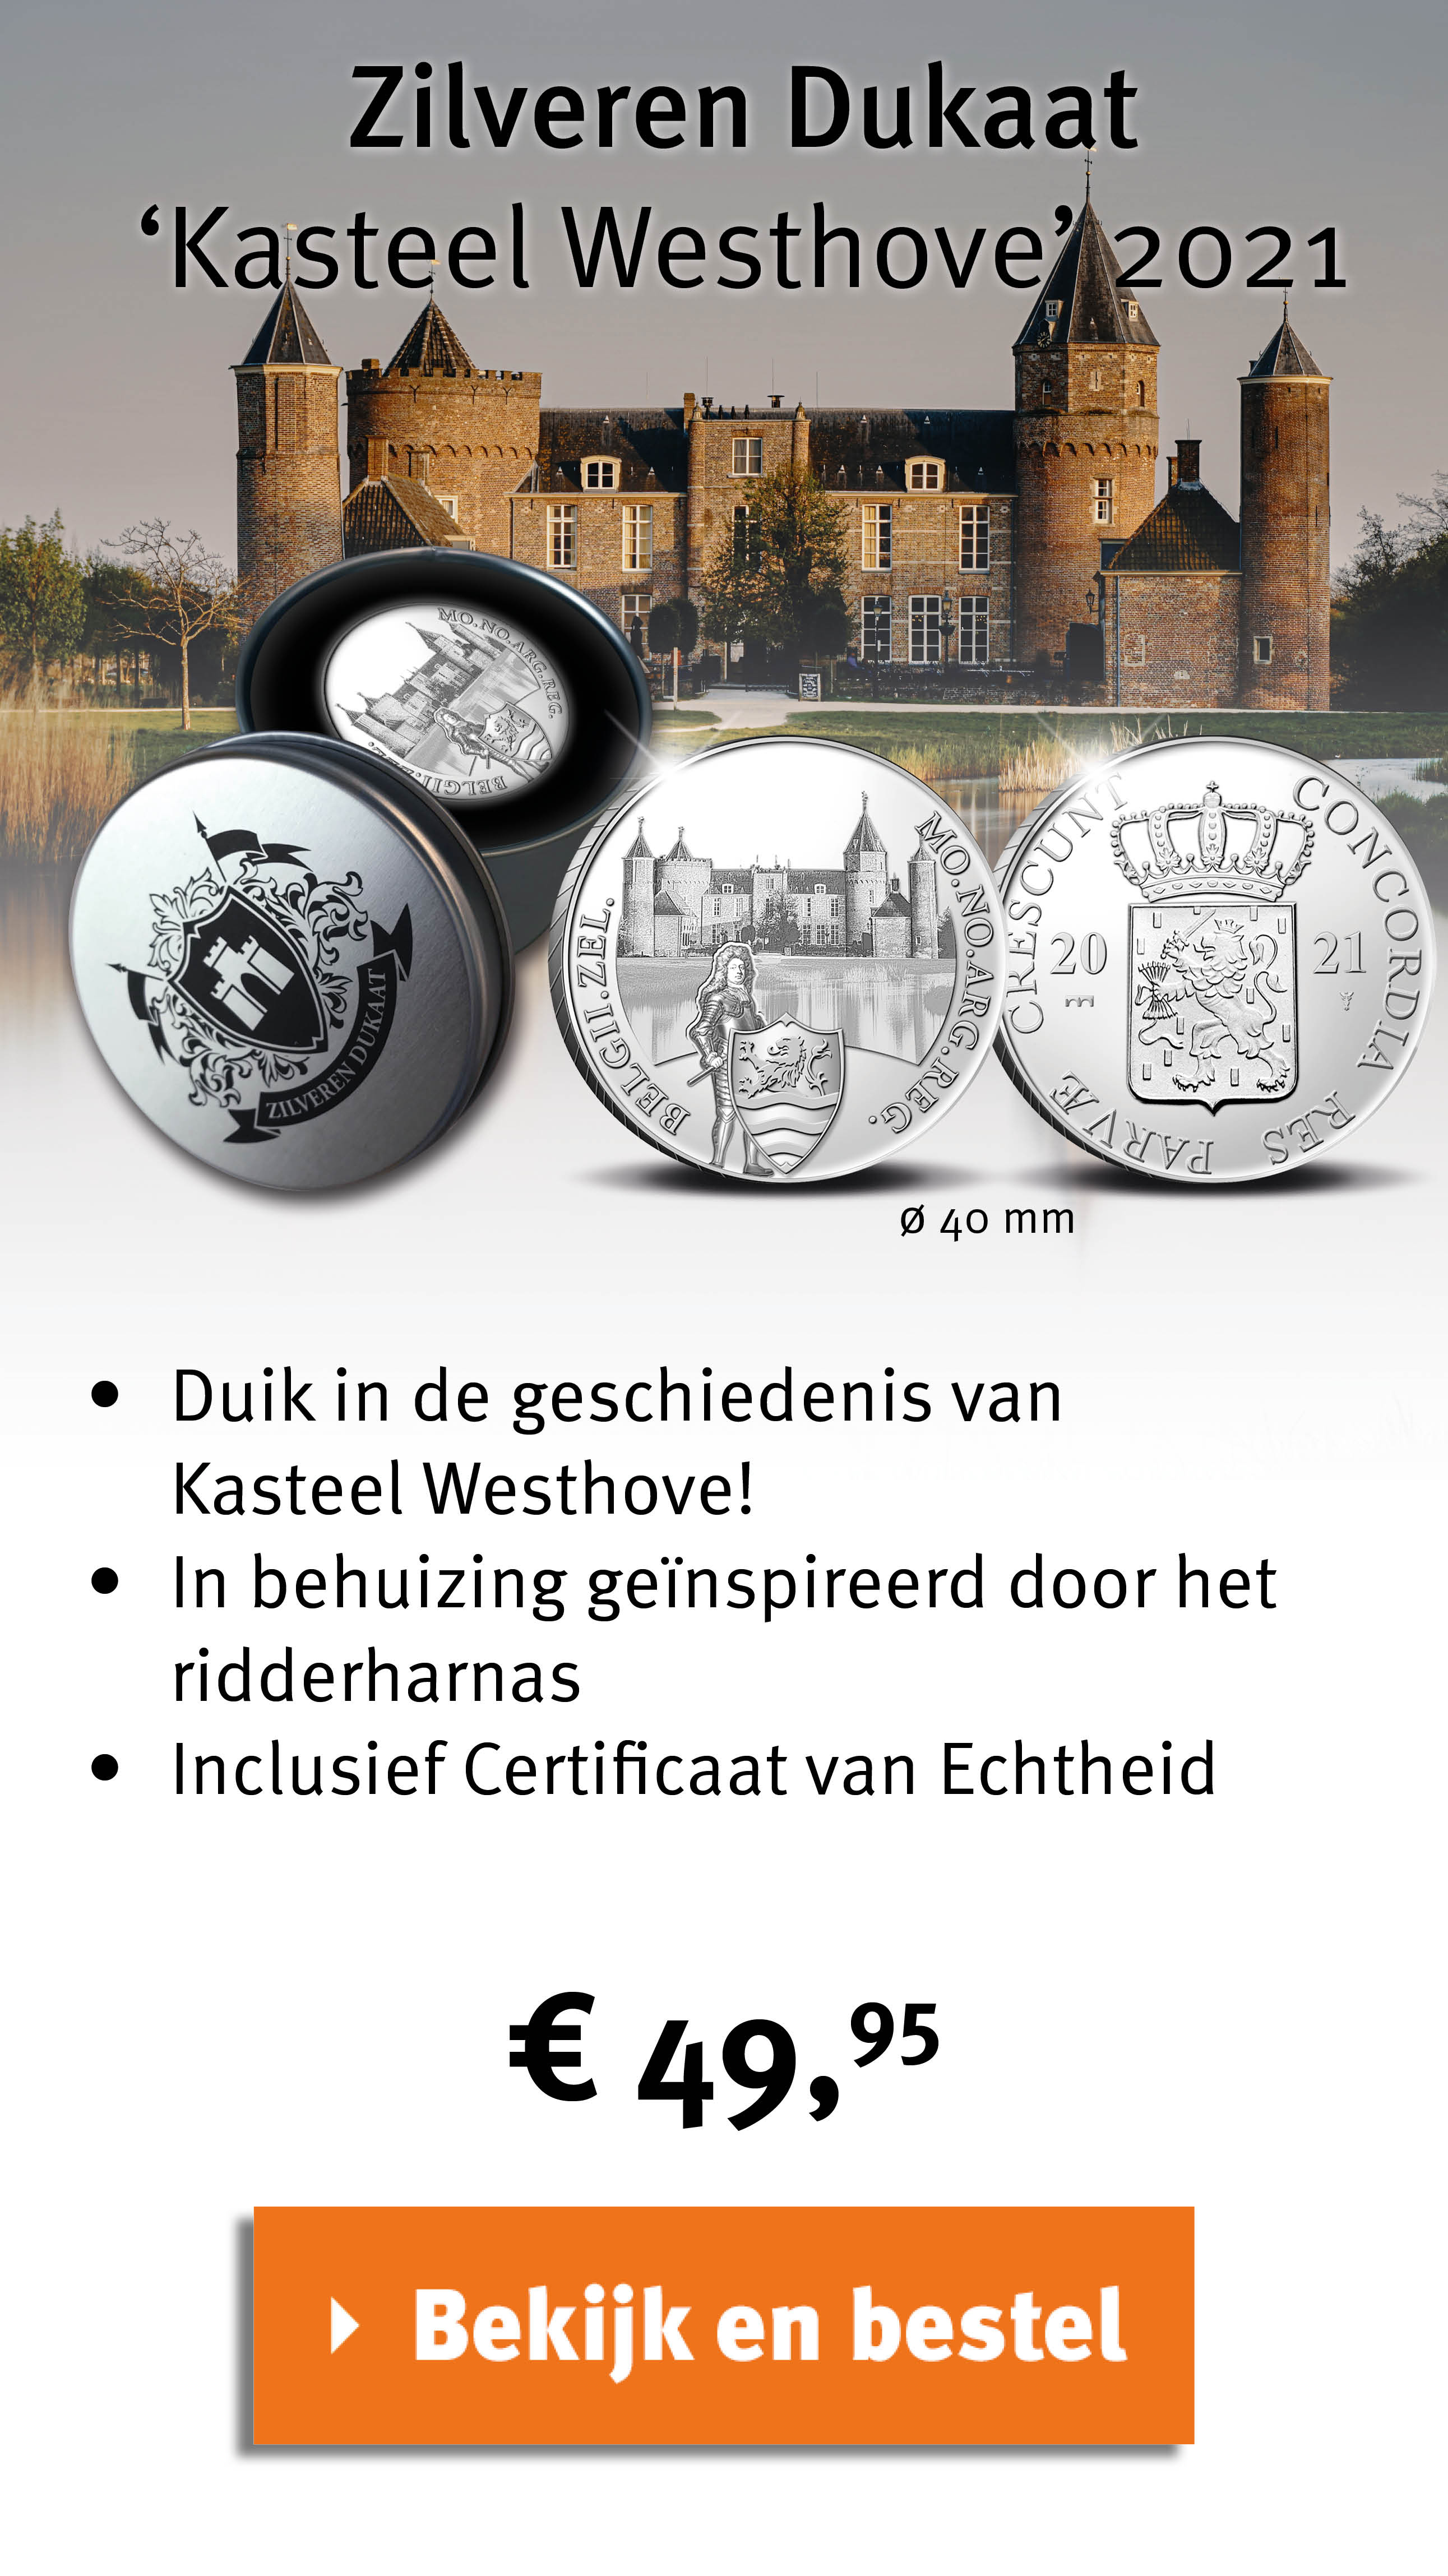 Bekijk en bestel: Zilveren Dukaat ‘Kasteel Westhove’ 2021